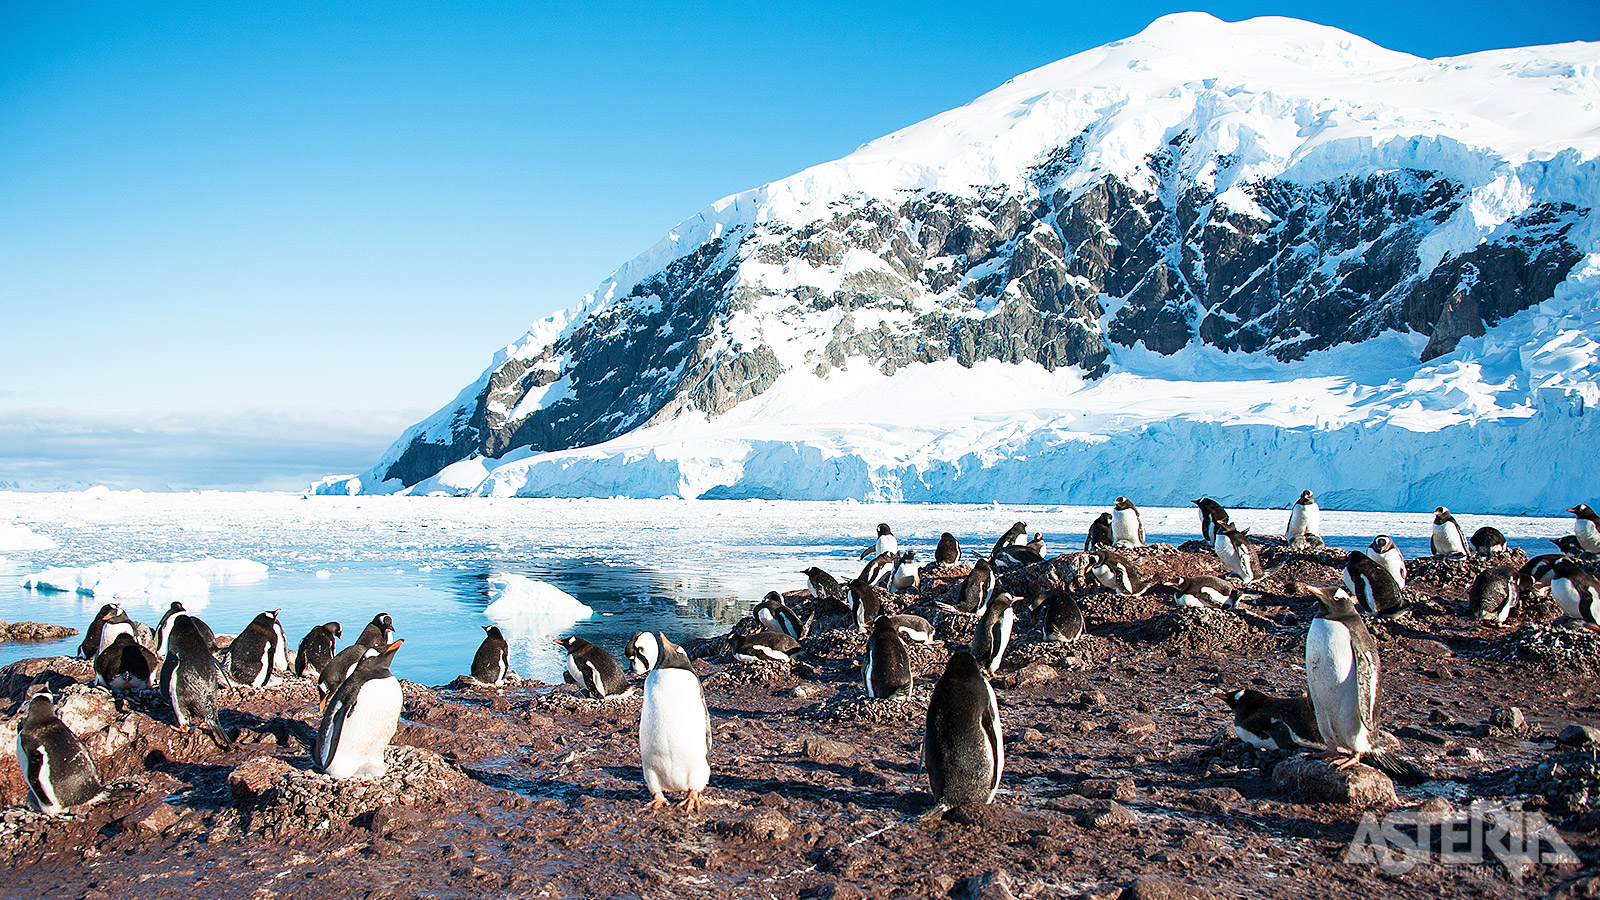 De rotskusten van het Antarctisch schiereiland vormen de ideale broedplaats voor pinguïnkolonies